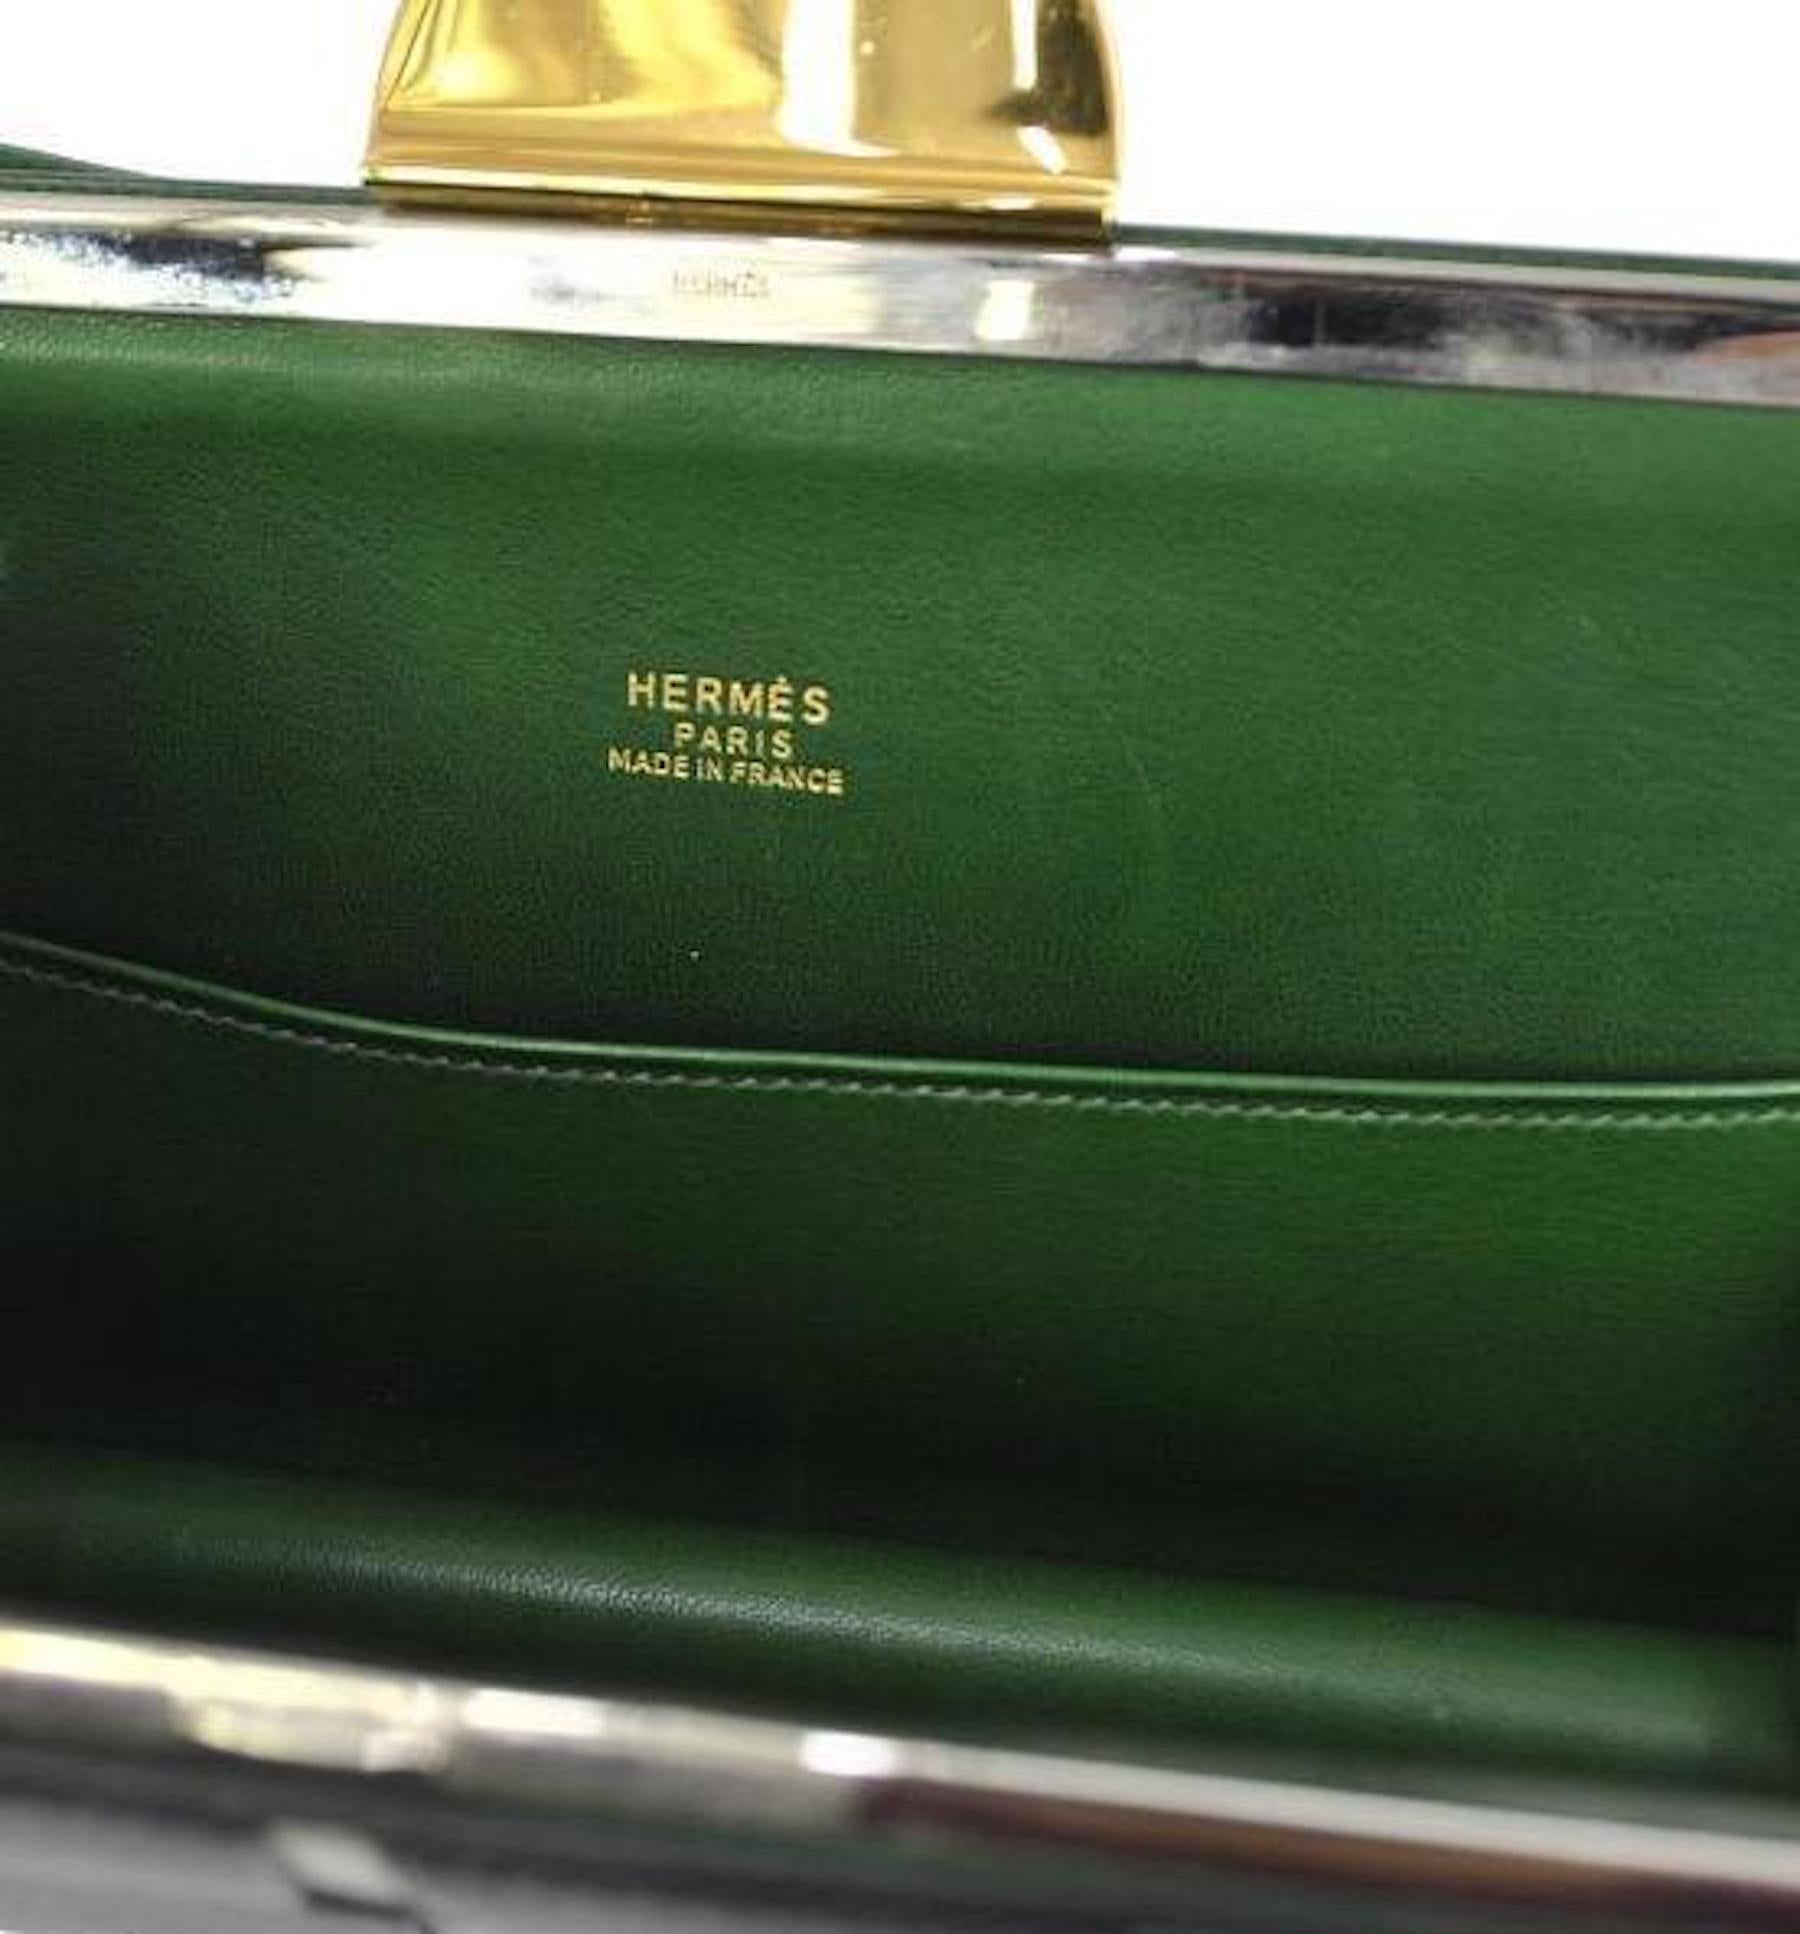 Hermes Rare Vintage Leather Road Kisslock 2 in 1 Evening Clutch Shoulder Bag 2